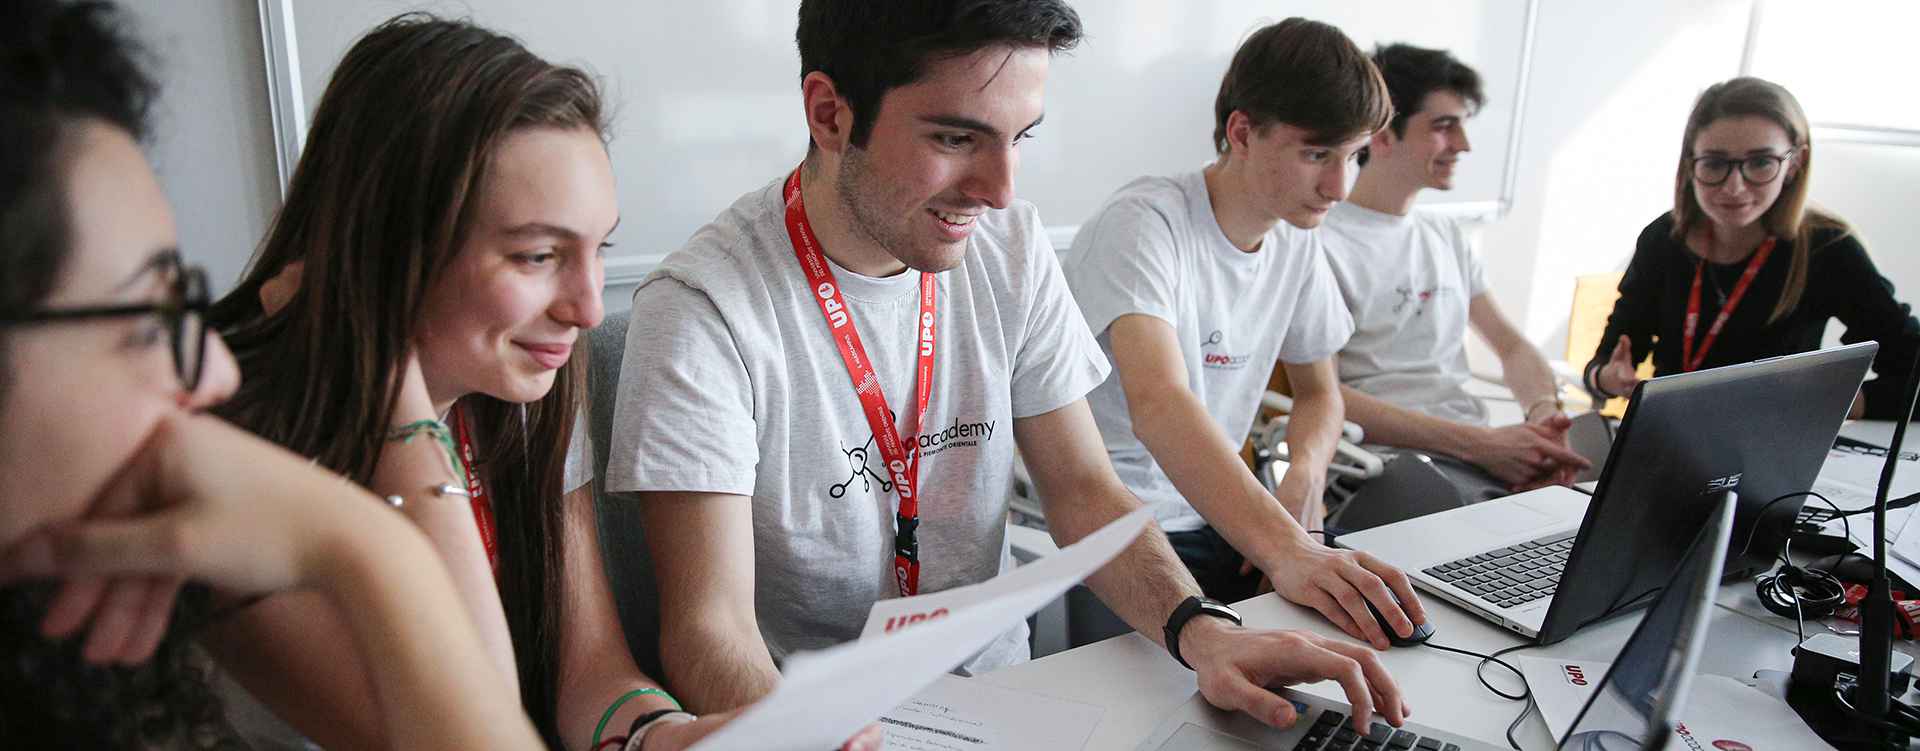 Immagine di un gruppo di ragazzi in lavoro davanti al computer